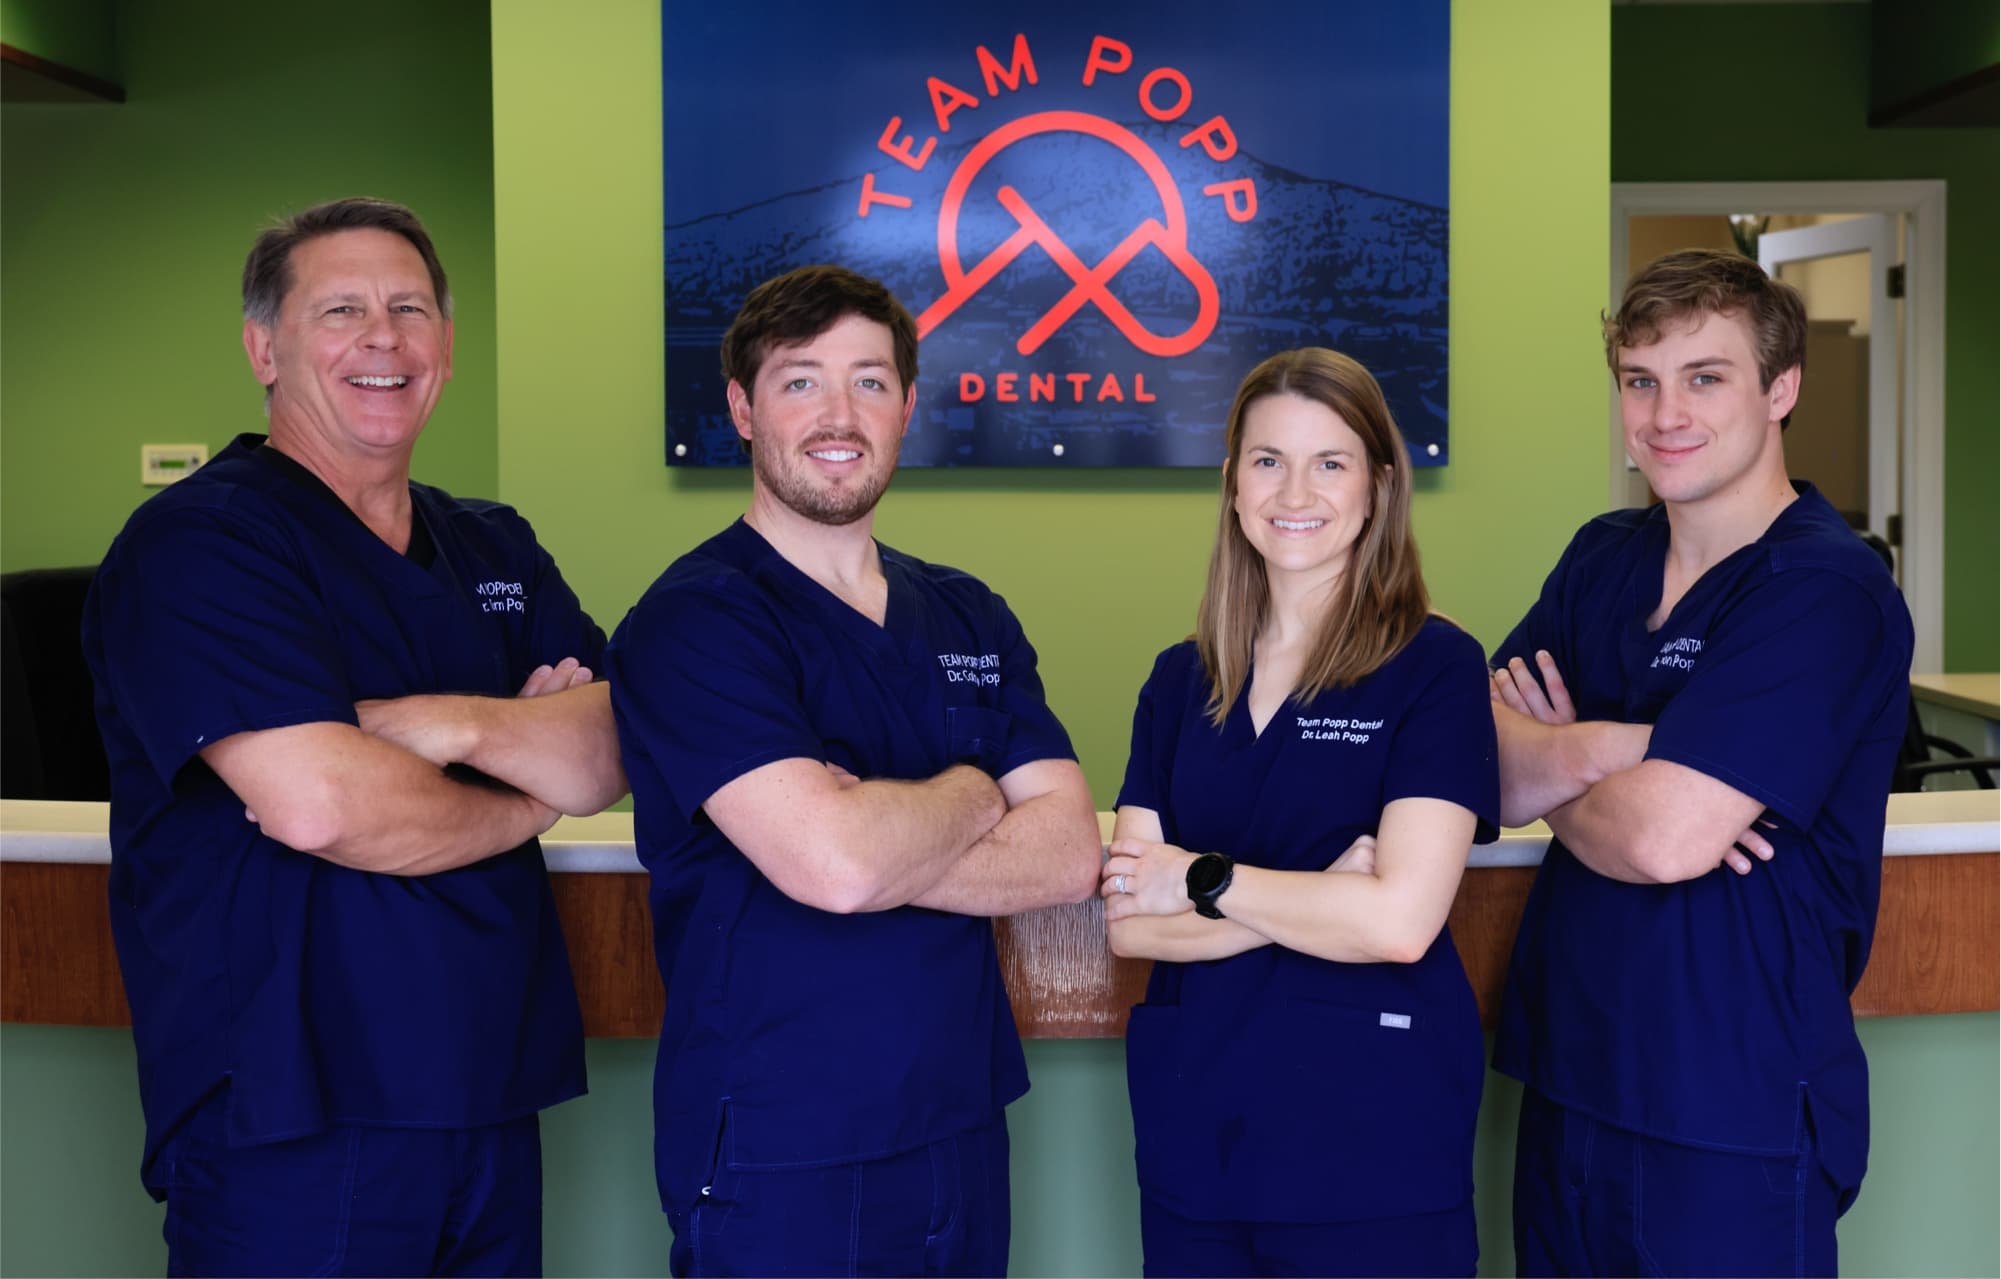 team popp doctors smiling